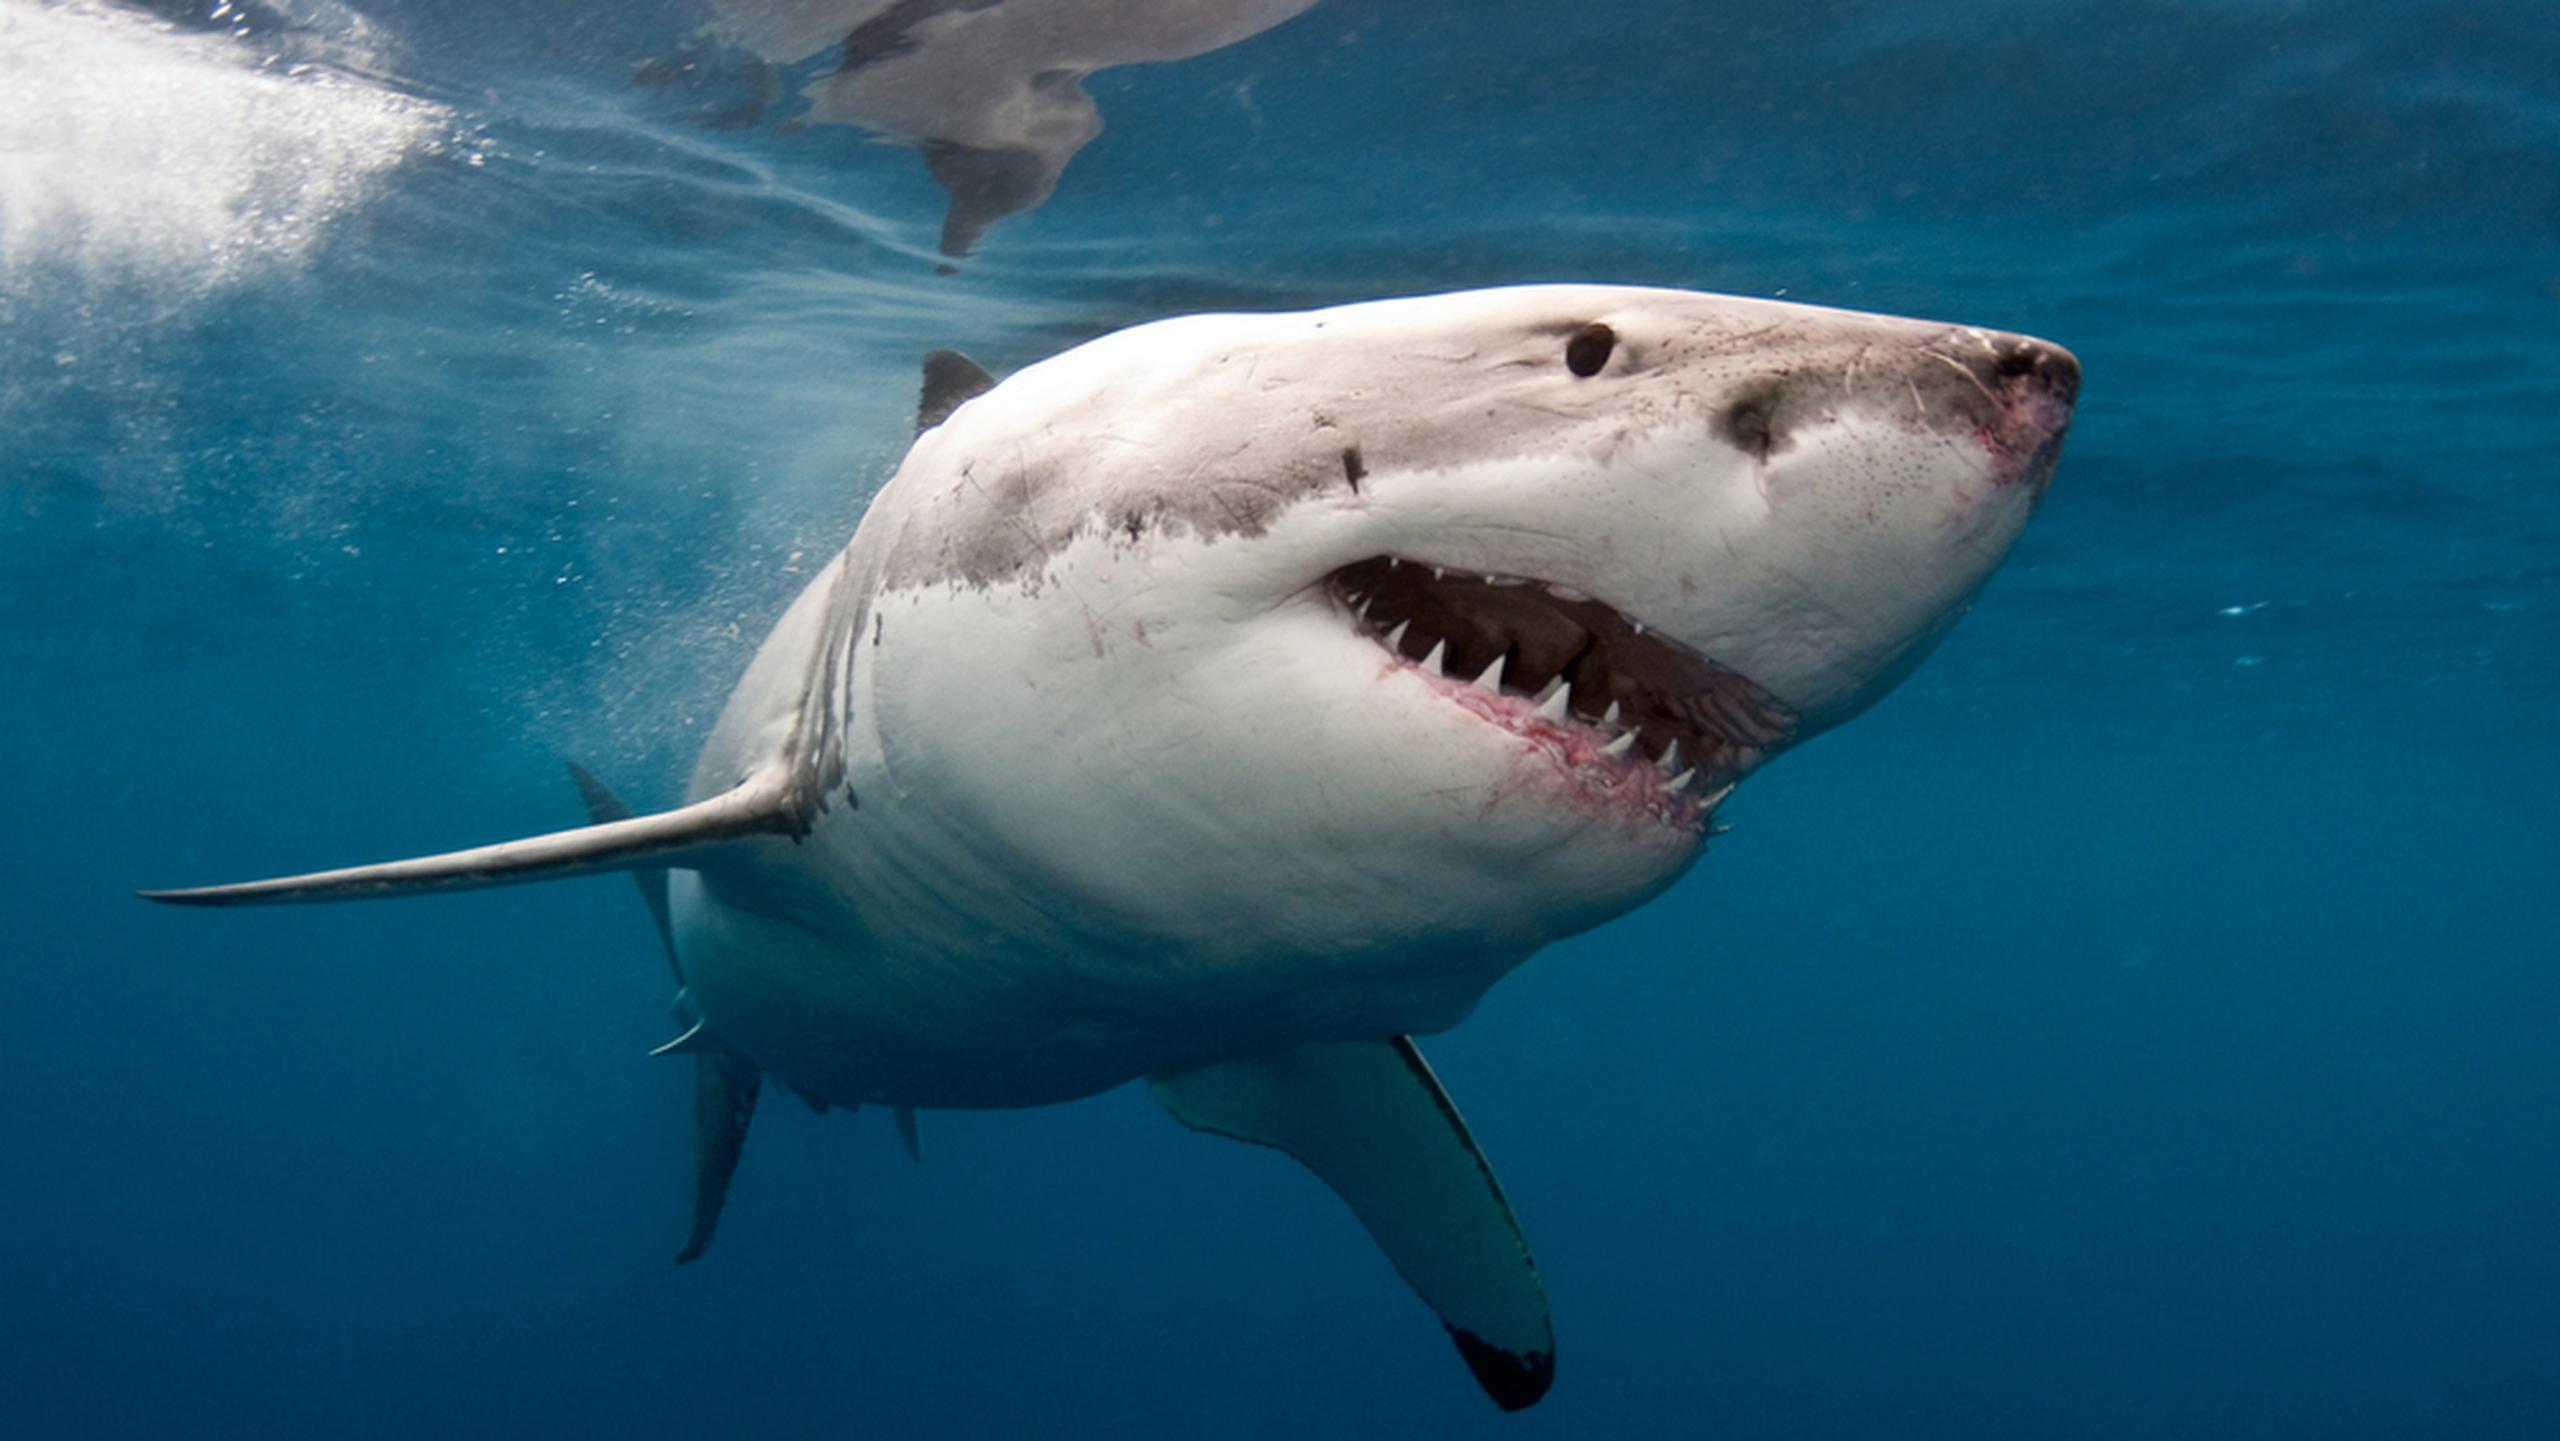 Aunque no se avistó ningún tiburón, las autoridades indicaron que el ataque fue causado por un animal marino de gran tamaño.